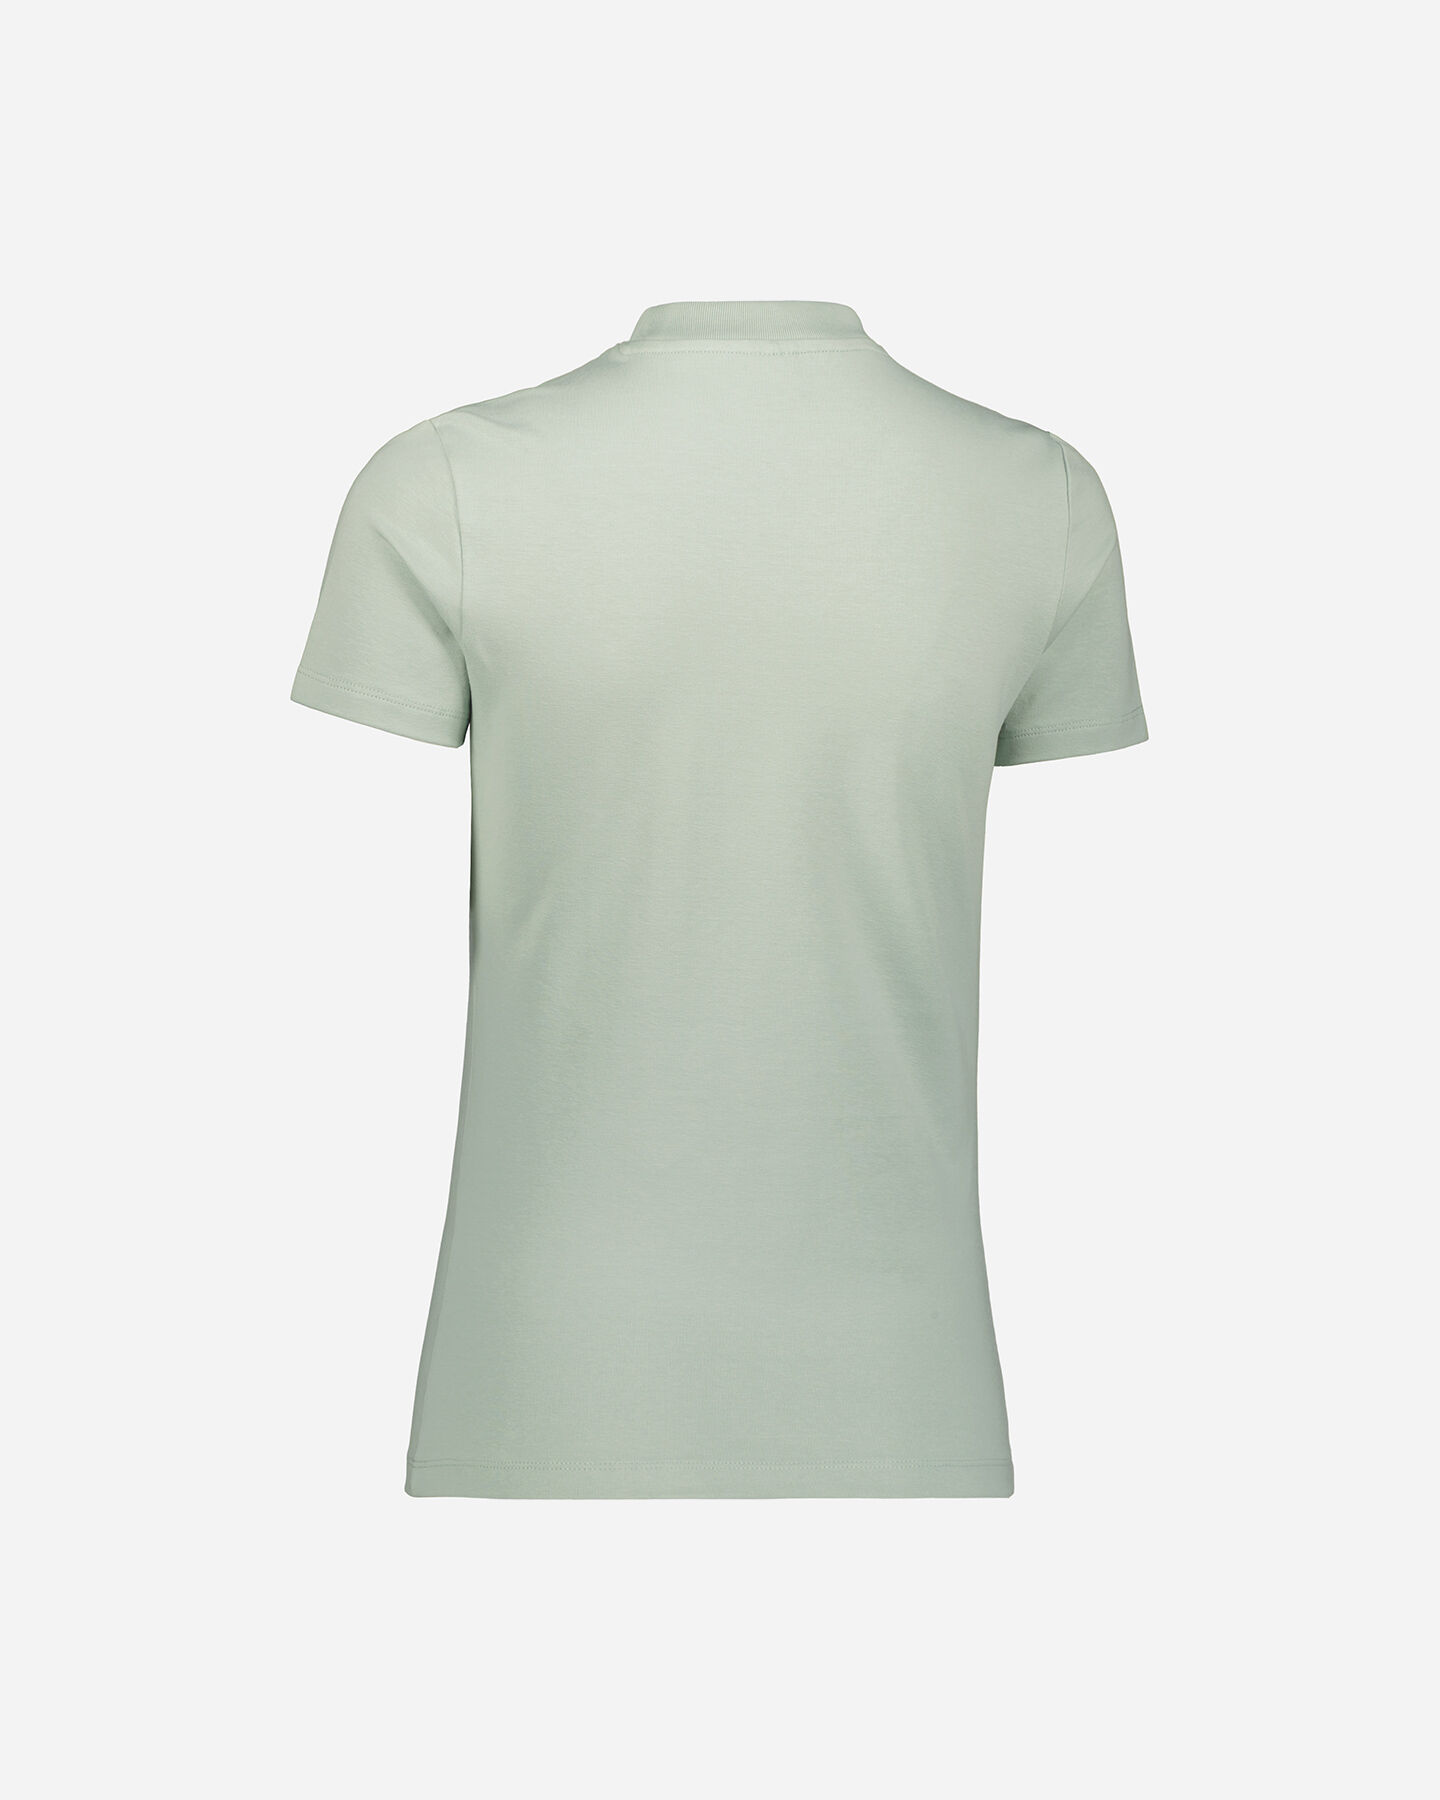  T-Shirt PUMA CONCEPT LOGO W S5615090|54|XS scatto 1